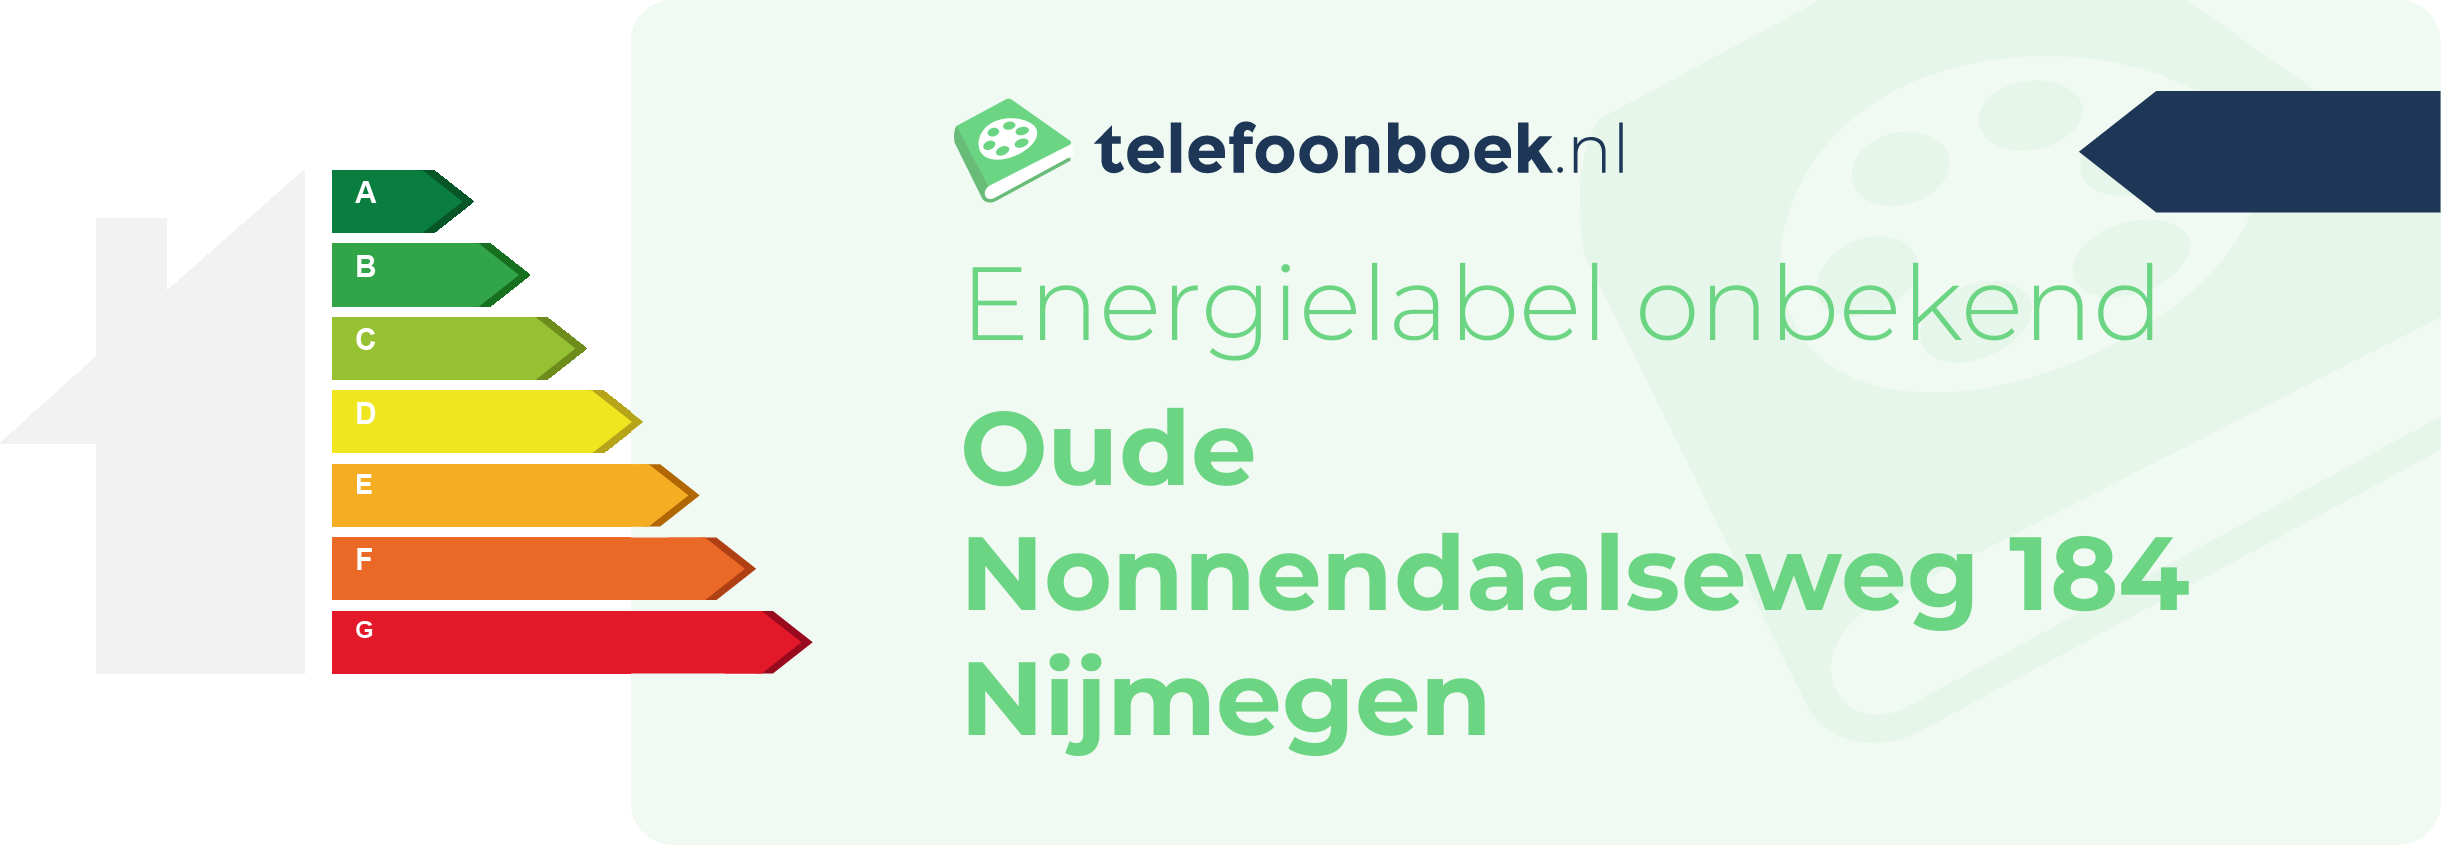 Energielabel Oude Nonnendaalseweg 184 Nijmegen